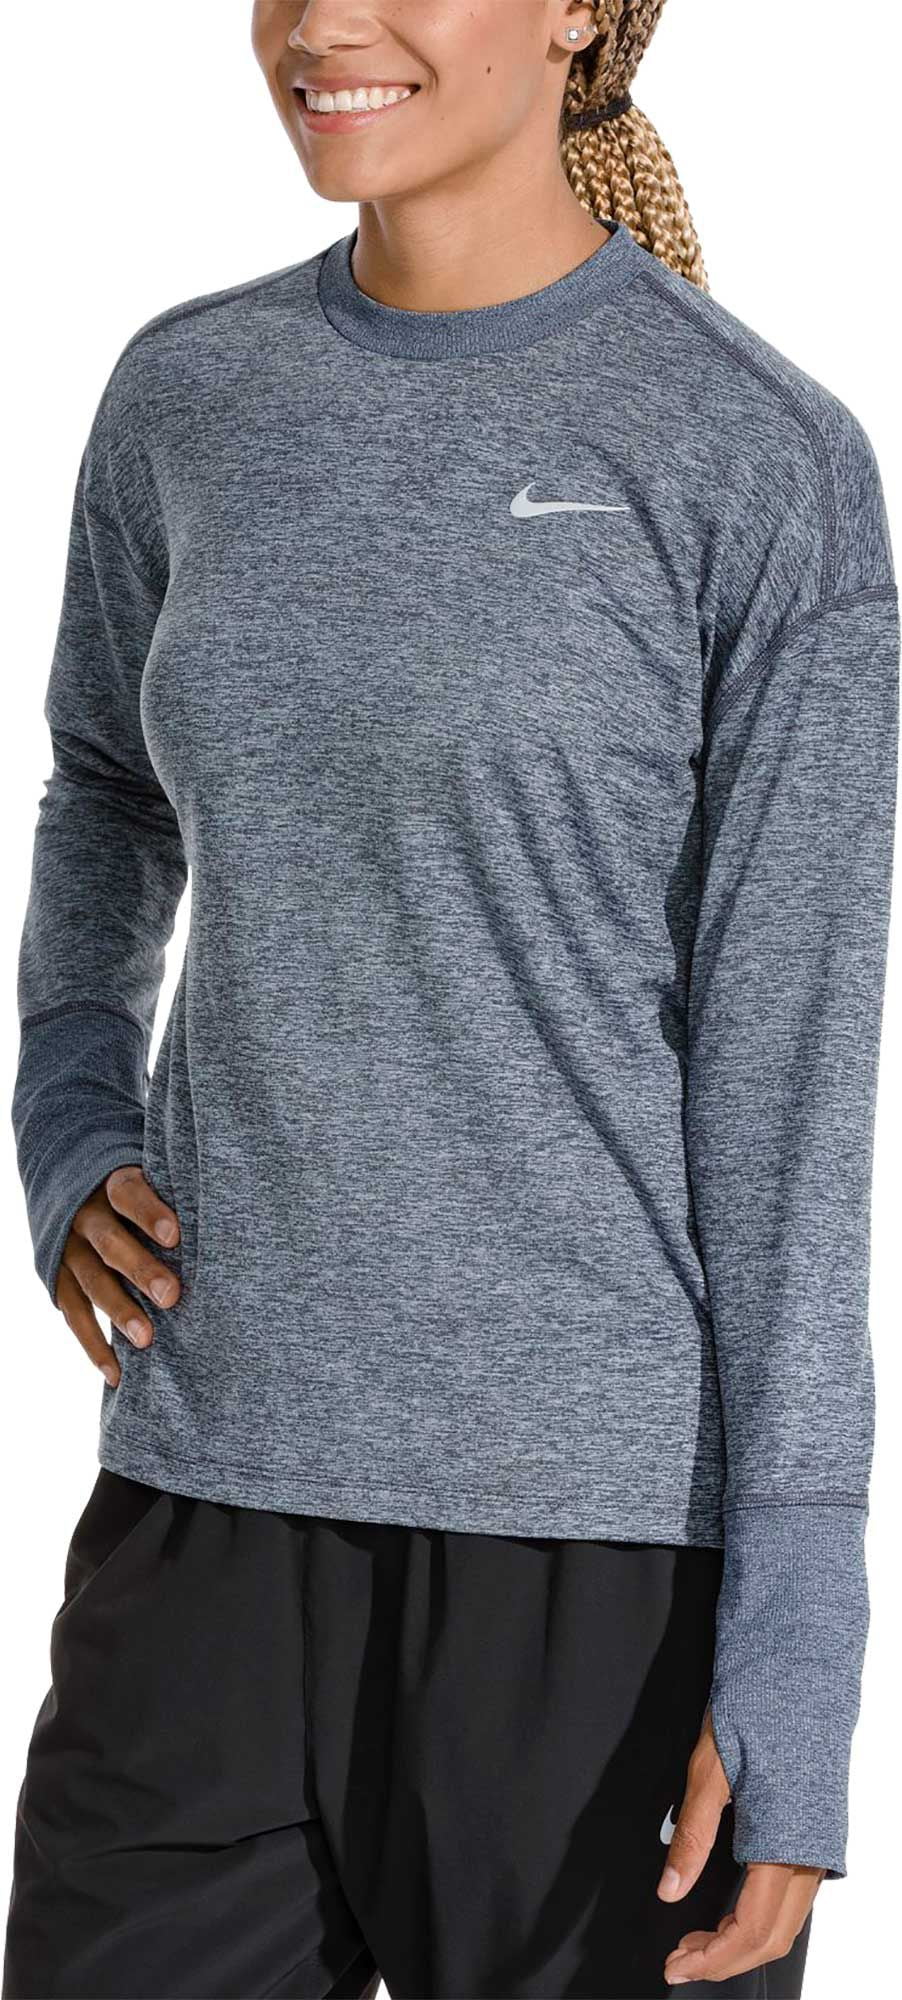 nike women's element long sleeve running shirt